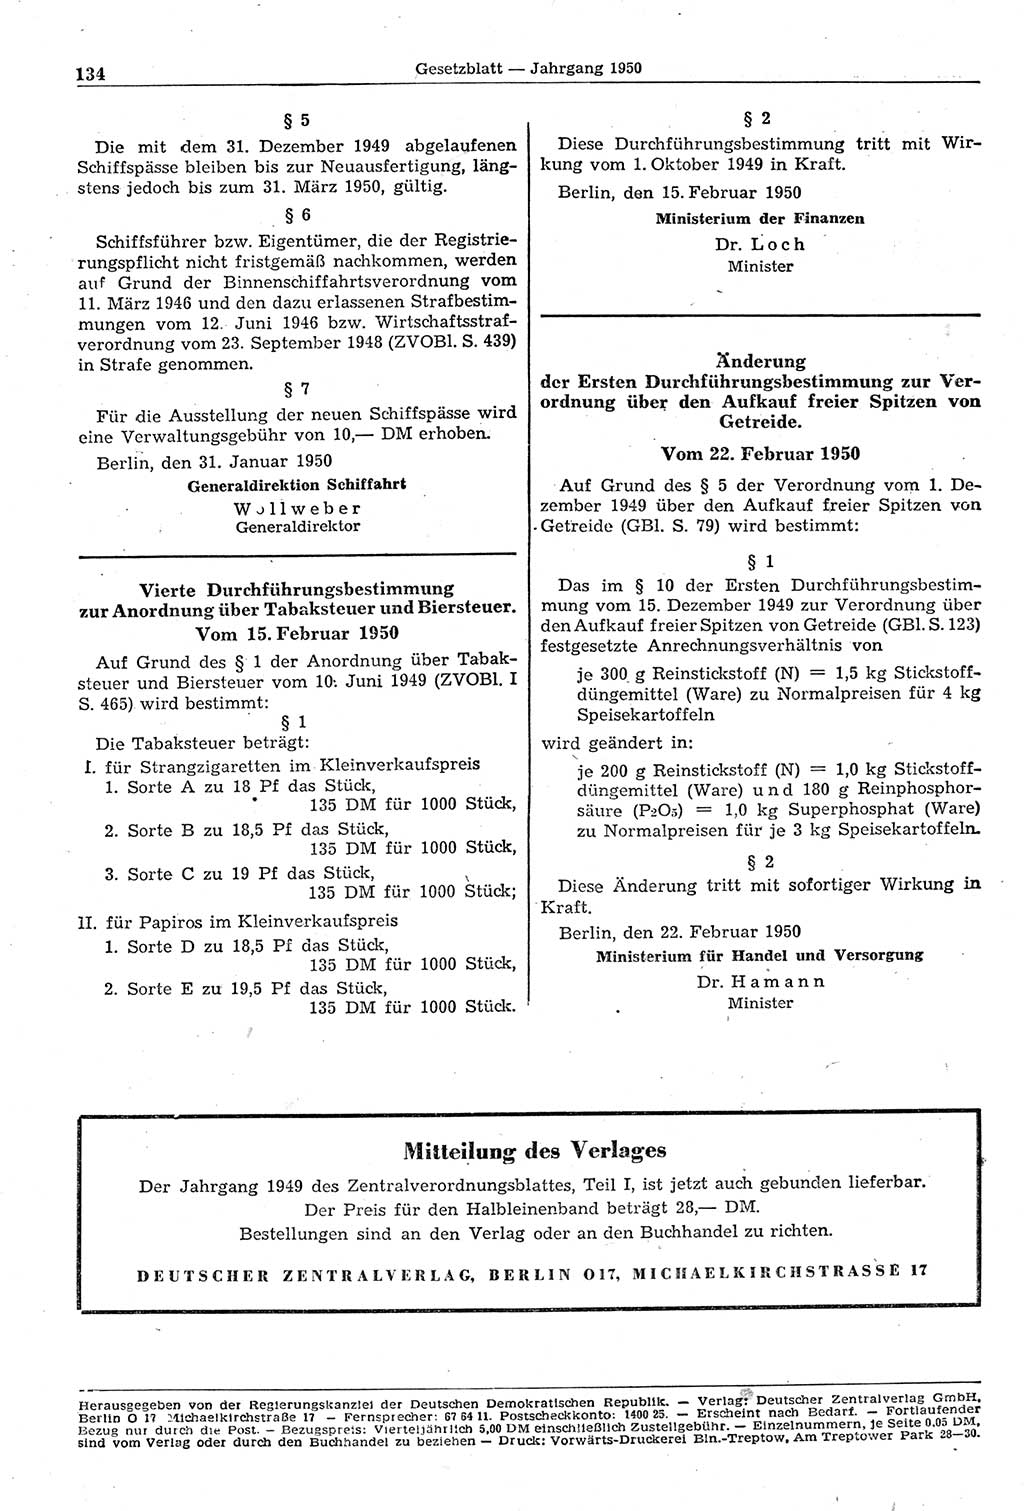 Gesetzblatt (GBl.) der Deutschen Demokratischen Republik (DDR) 1950, Seite 134 (GBl. DDR 1950, S. 134)